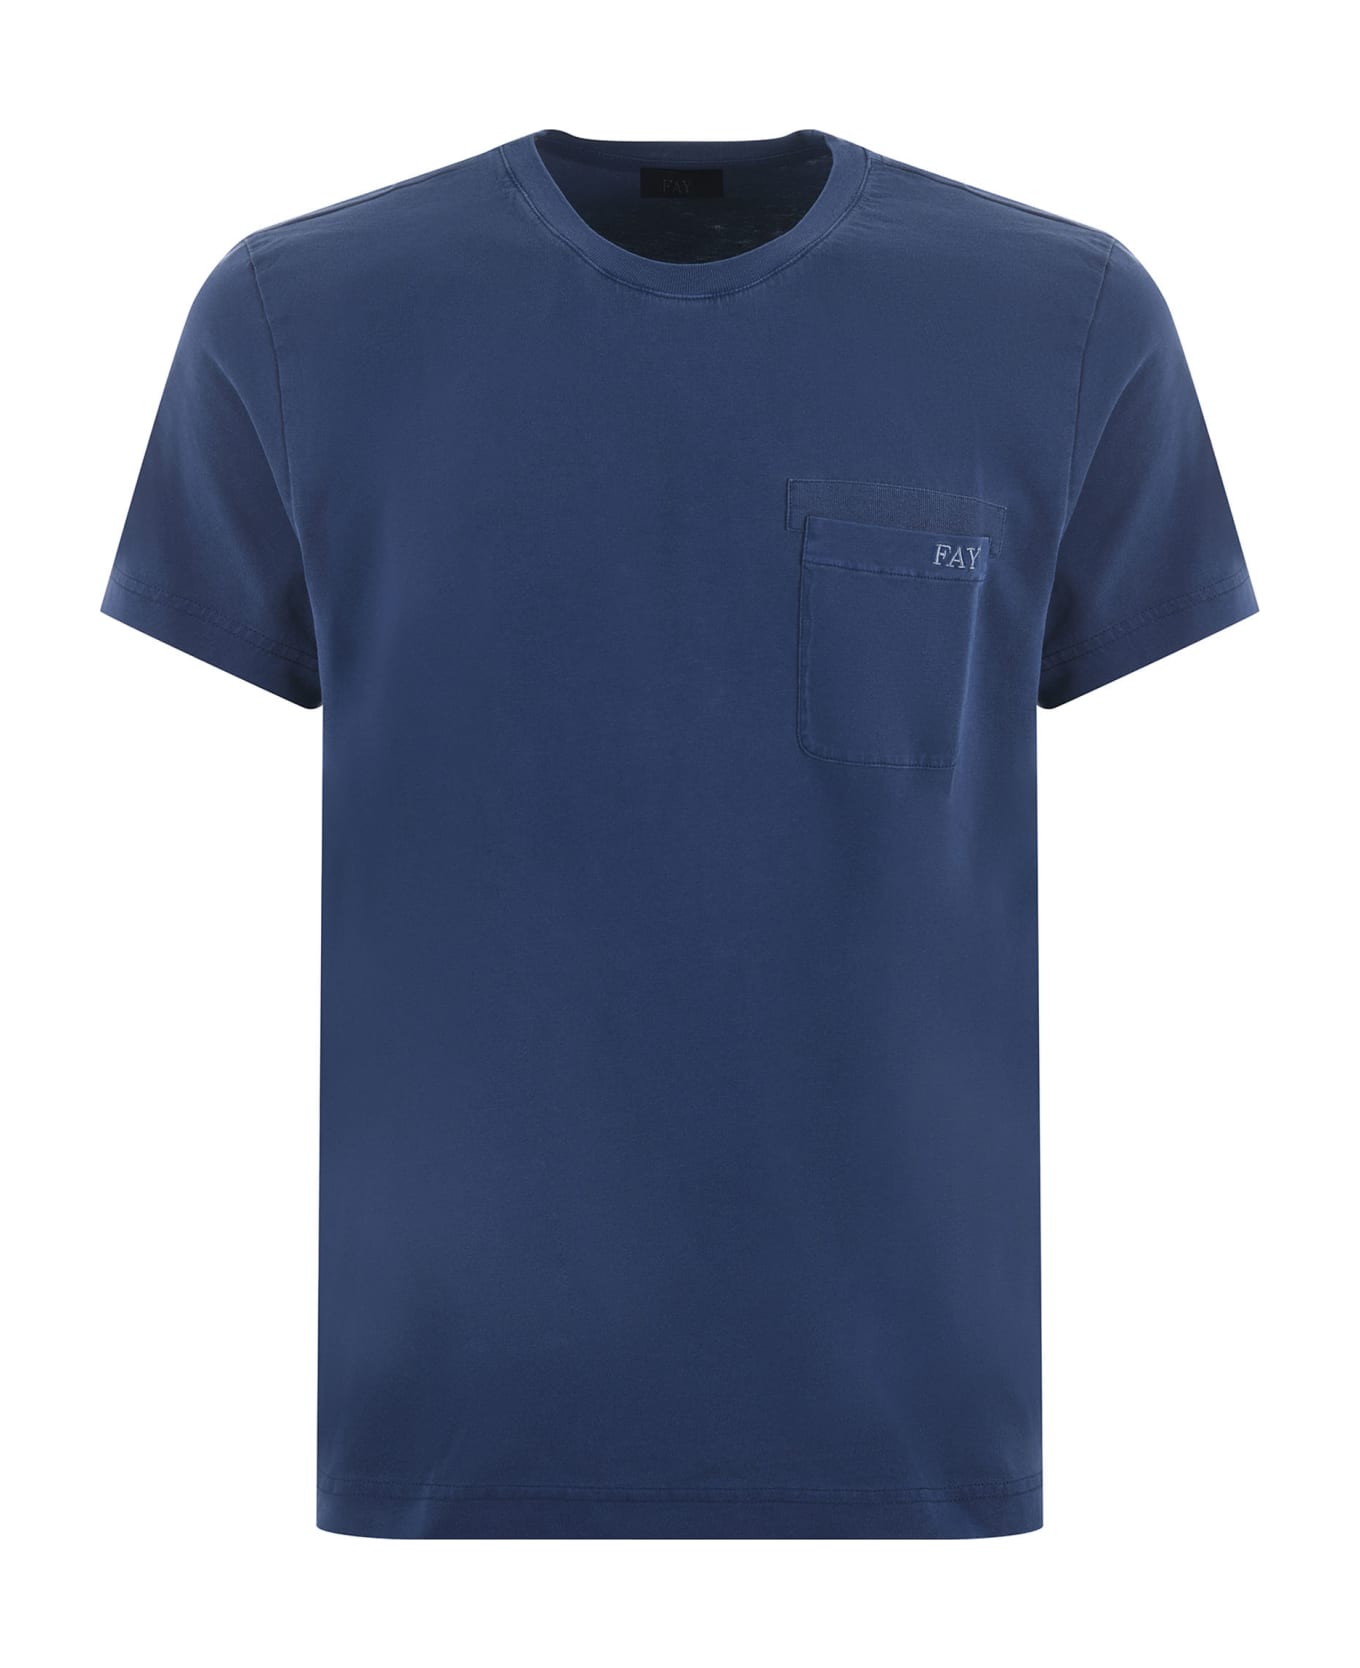 Fay T-shirt - Blu